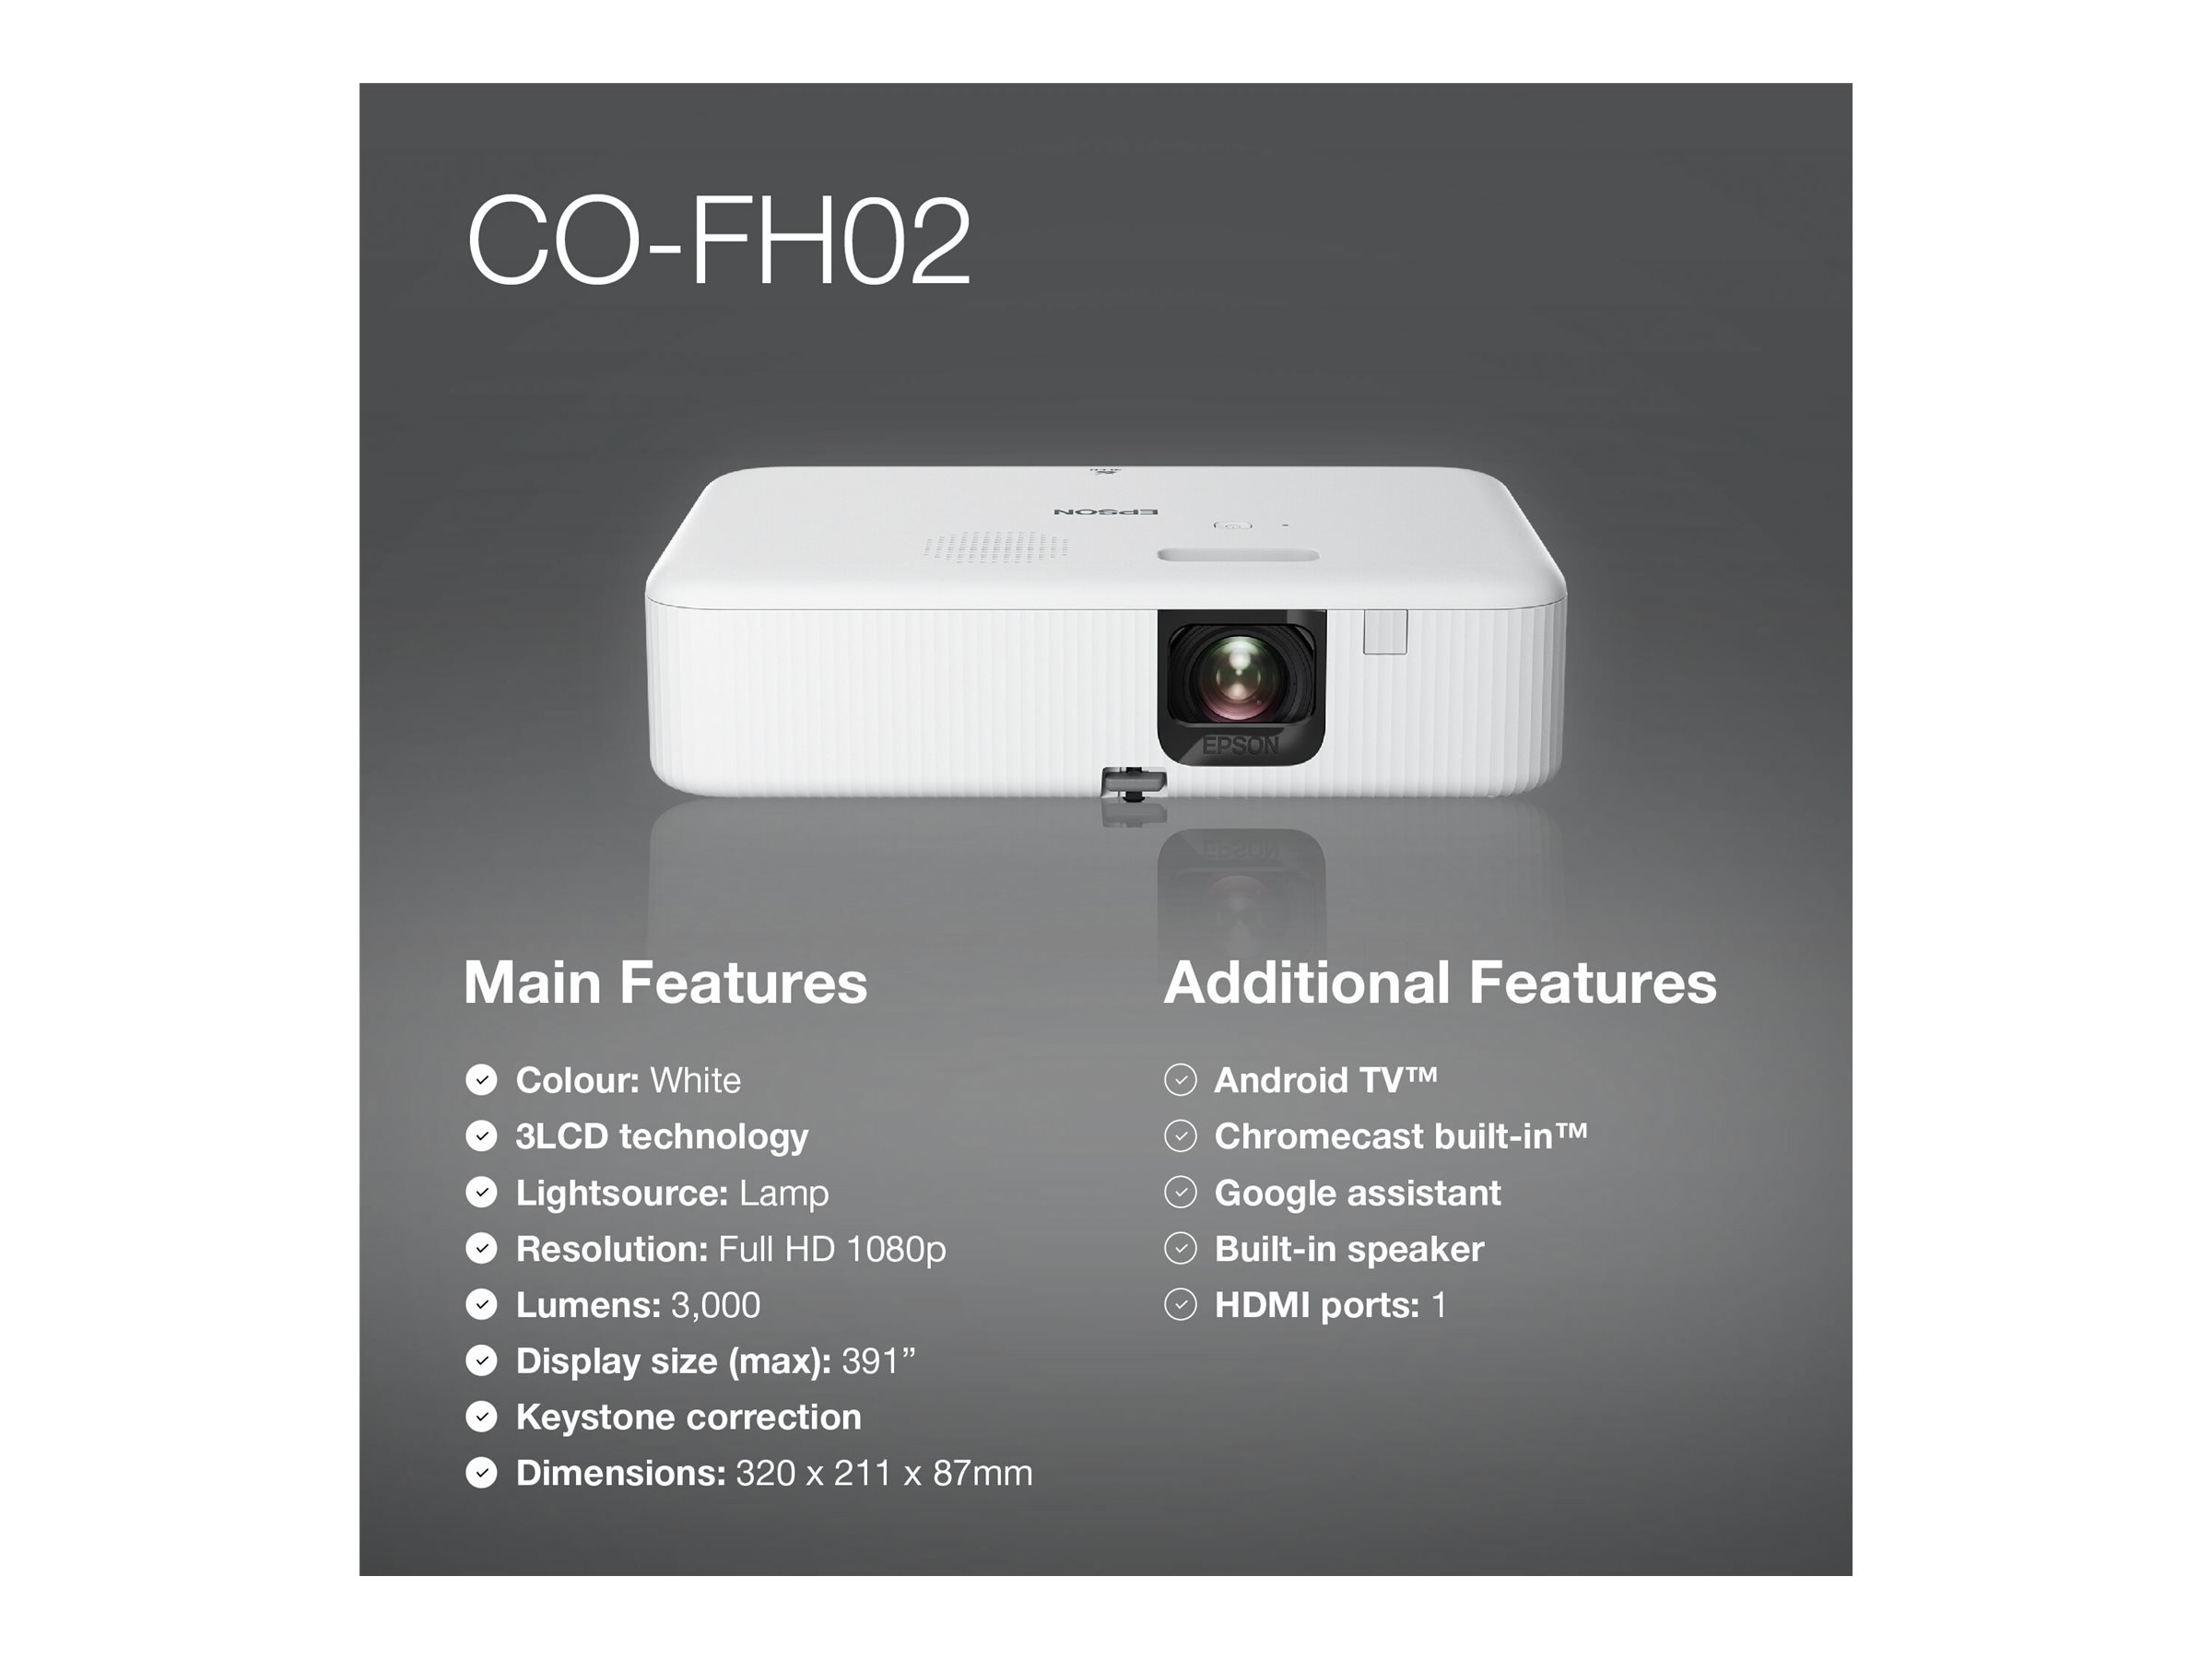 Epson CO-FH02 - Projecteur 3LCD - portable - 3000 lumens (blanc) - 3000 lumens (couleur) - Full HD (1920 x 1080) - 16:9 - 1080p - blanc et noir - Android TV - V11HA85040 - Projecteurs pour home cinema